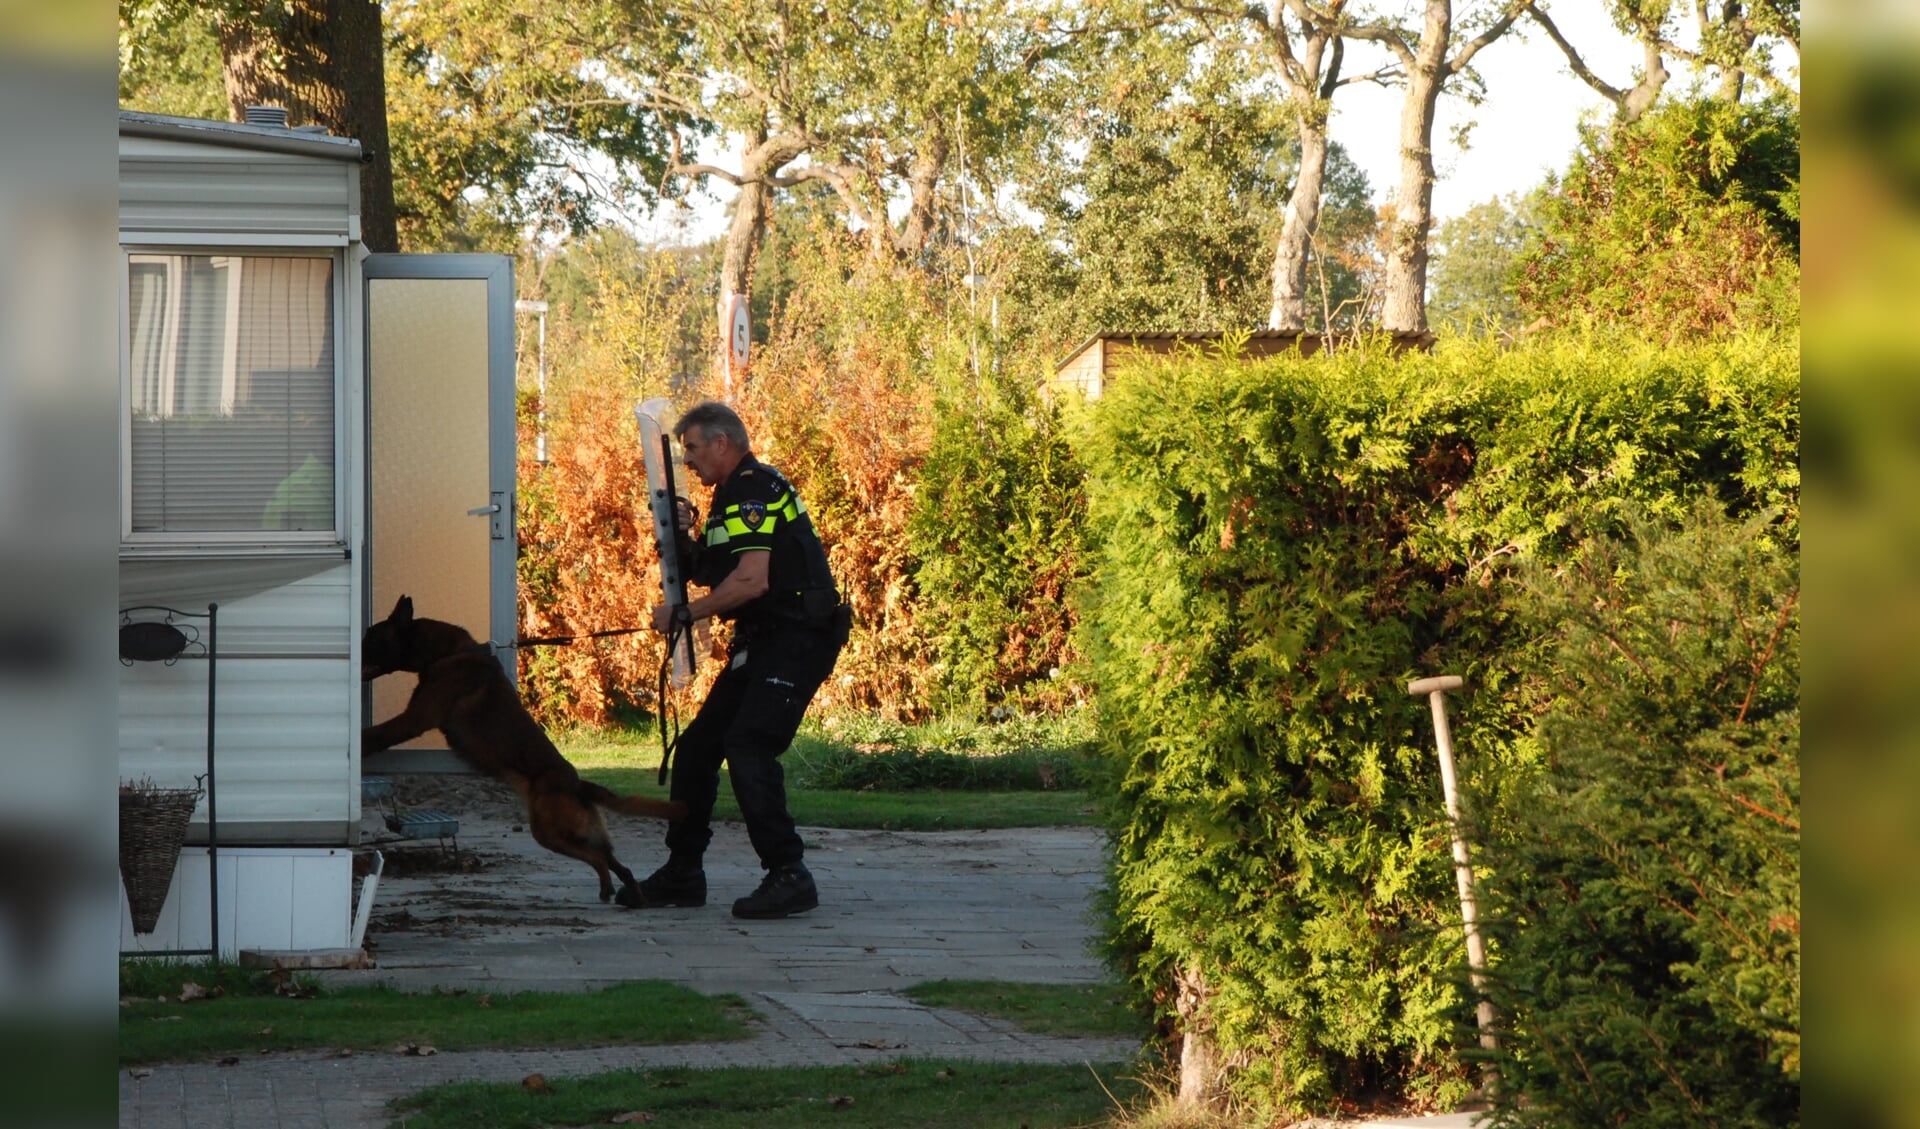 De politiehond wordt ingezet om de tweede verdachte uit de caravan te krijgen.